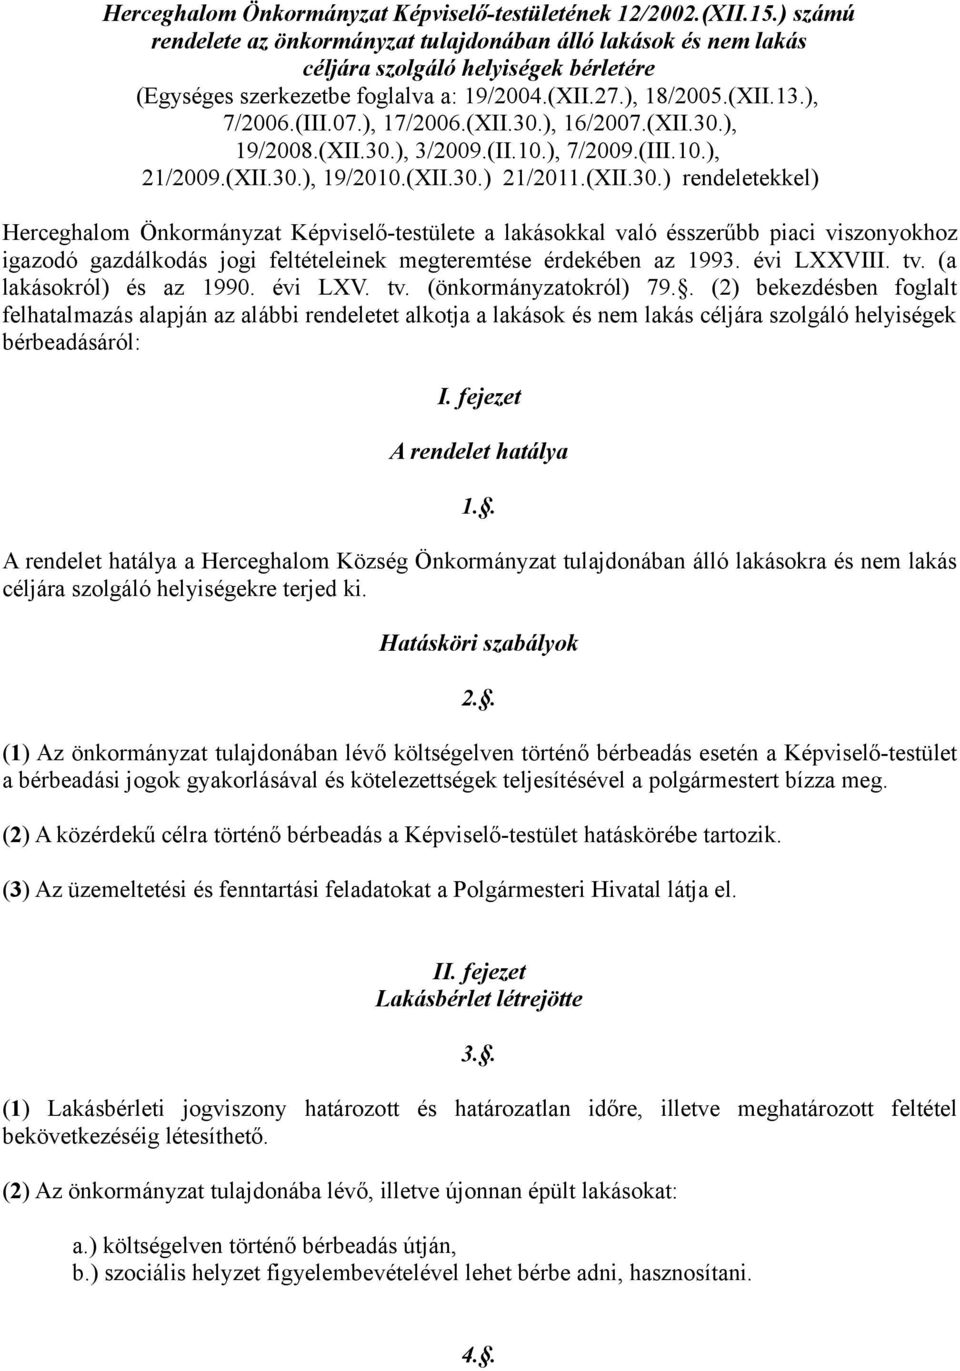 ), 17/2006.(XII.30.), 16/2007.(XII.30.), 19/2008.(XII.30.), 3/2009.(II.10.), 7/2009.(III.10.), 21/2009.(XII.30.), 19/2010.(XII.30.) 21/2011.(XII.30.) rendeletekkel) Herceghalom Önkormányzat Képviselő-testülete a lakásokkal való ésszerűbb piaci viszonyokhoz igazodó gazdálkodás jogi feltételeinek megteremtése érdekében az 1993.